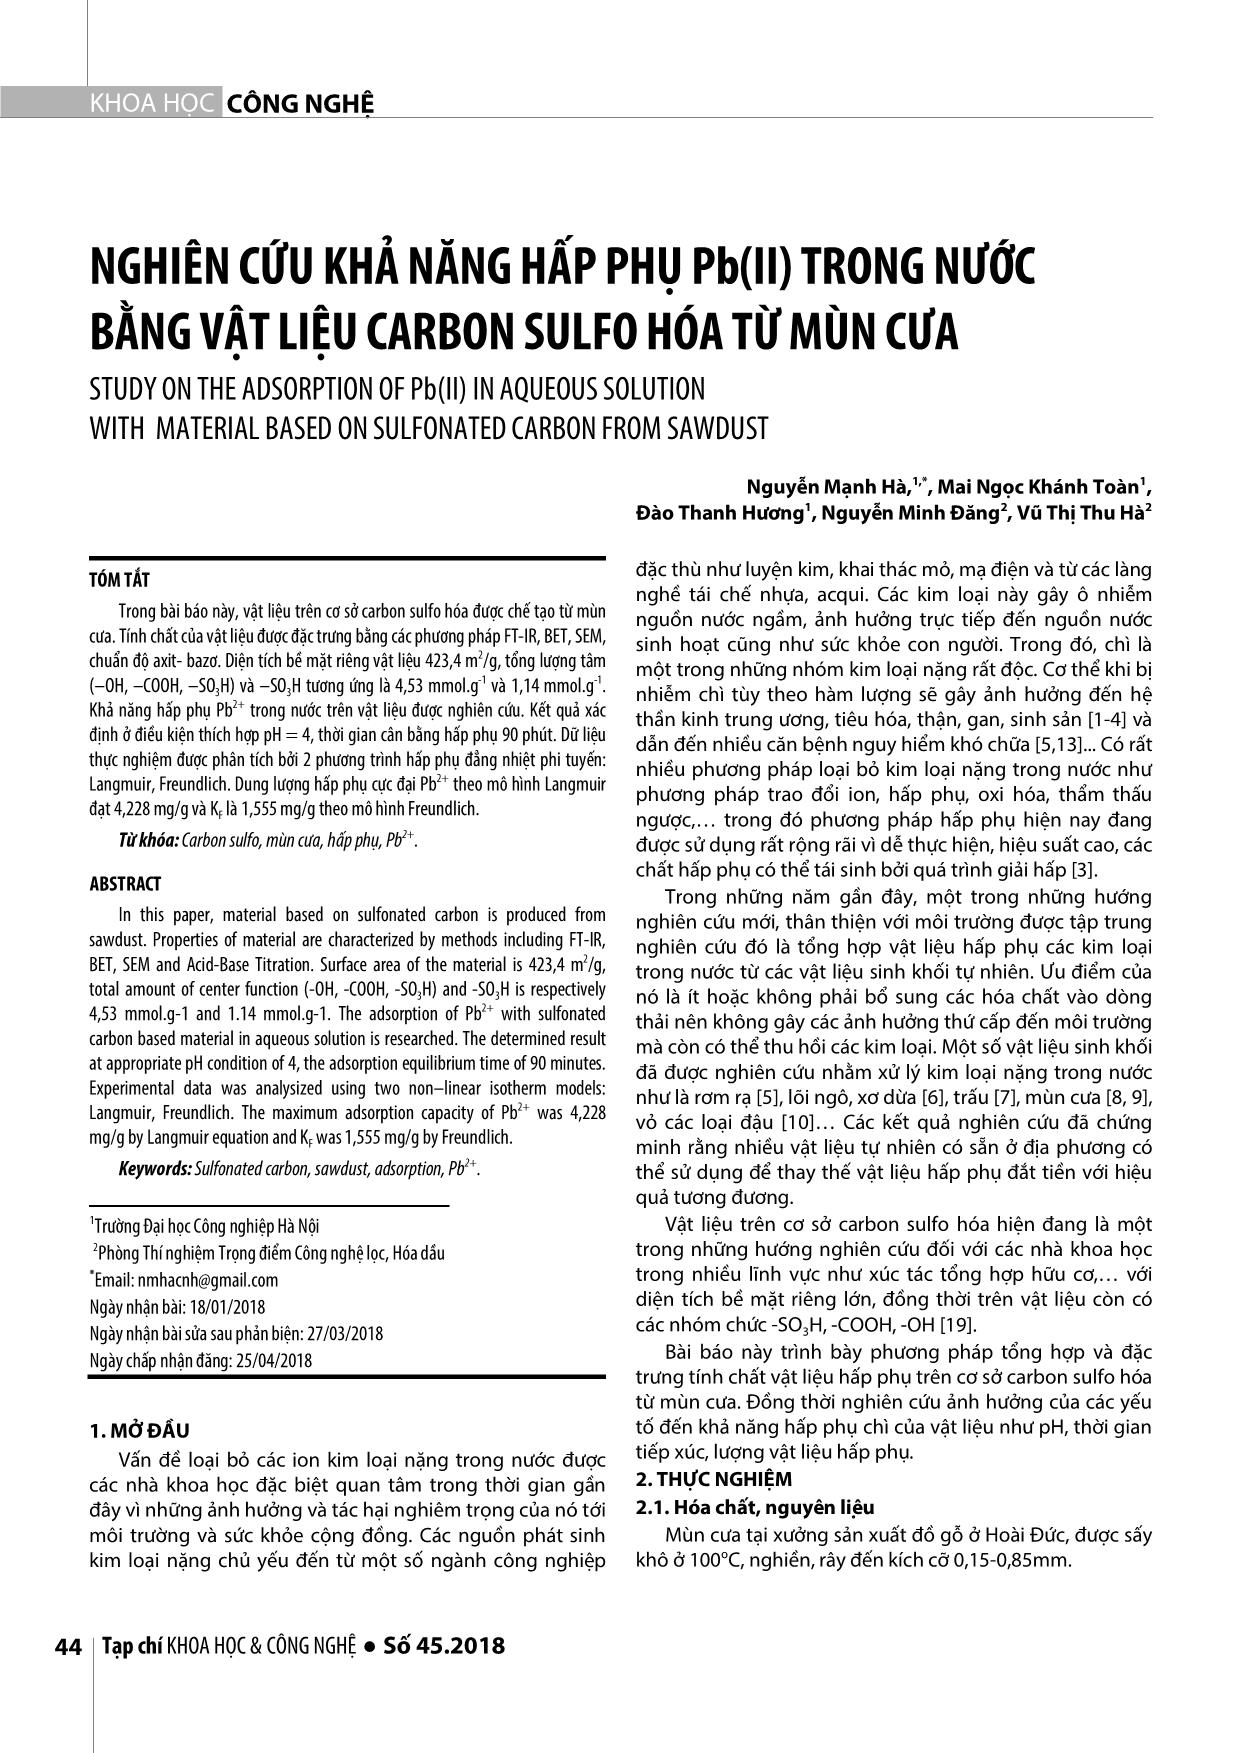 Nghiên cứu khả năng hấp phụ Pb(II) trong nước bằng vật liệu carbon sulfo hóa từ mùn cưa trang 1